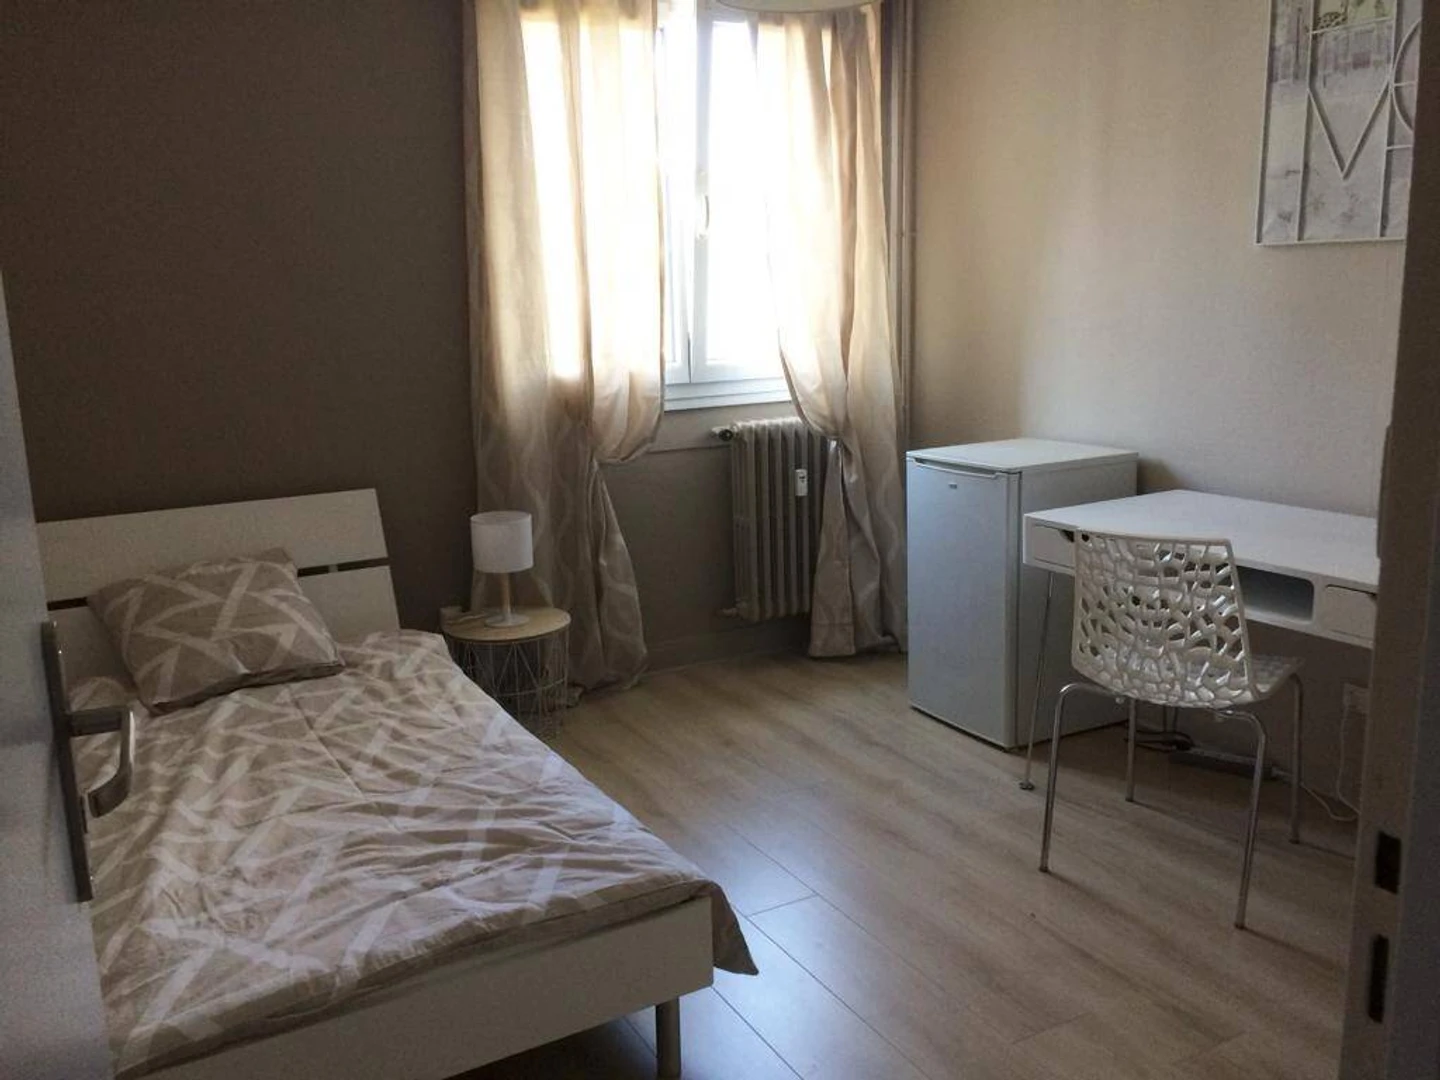 Quarto para alugar num apartamento partilhado em Besançon